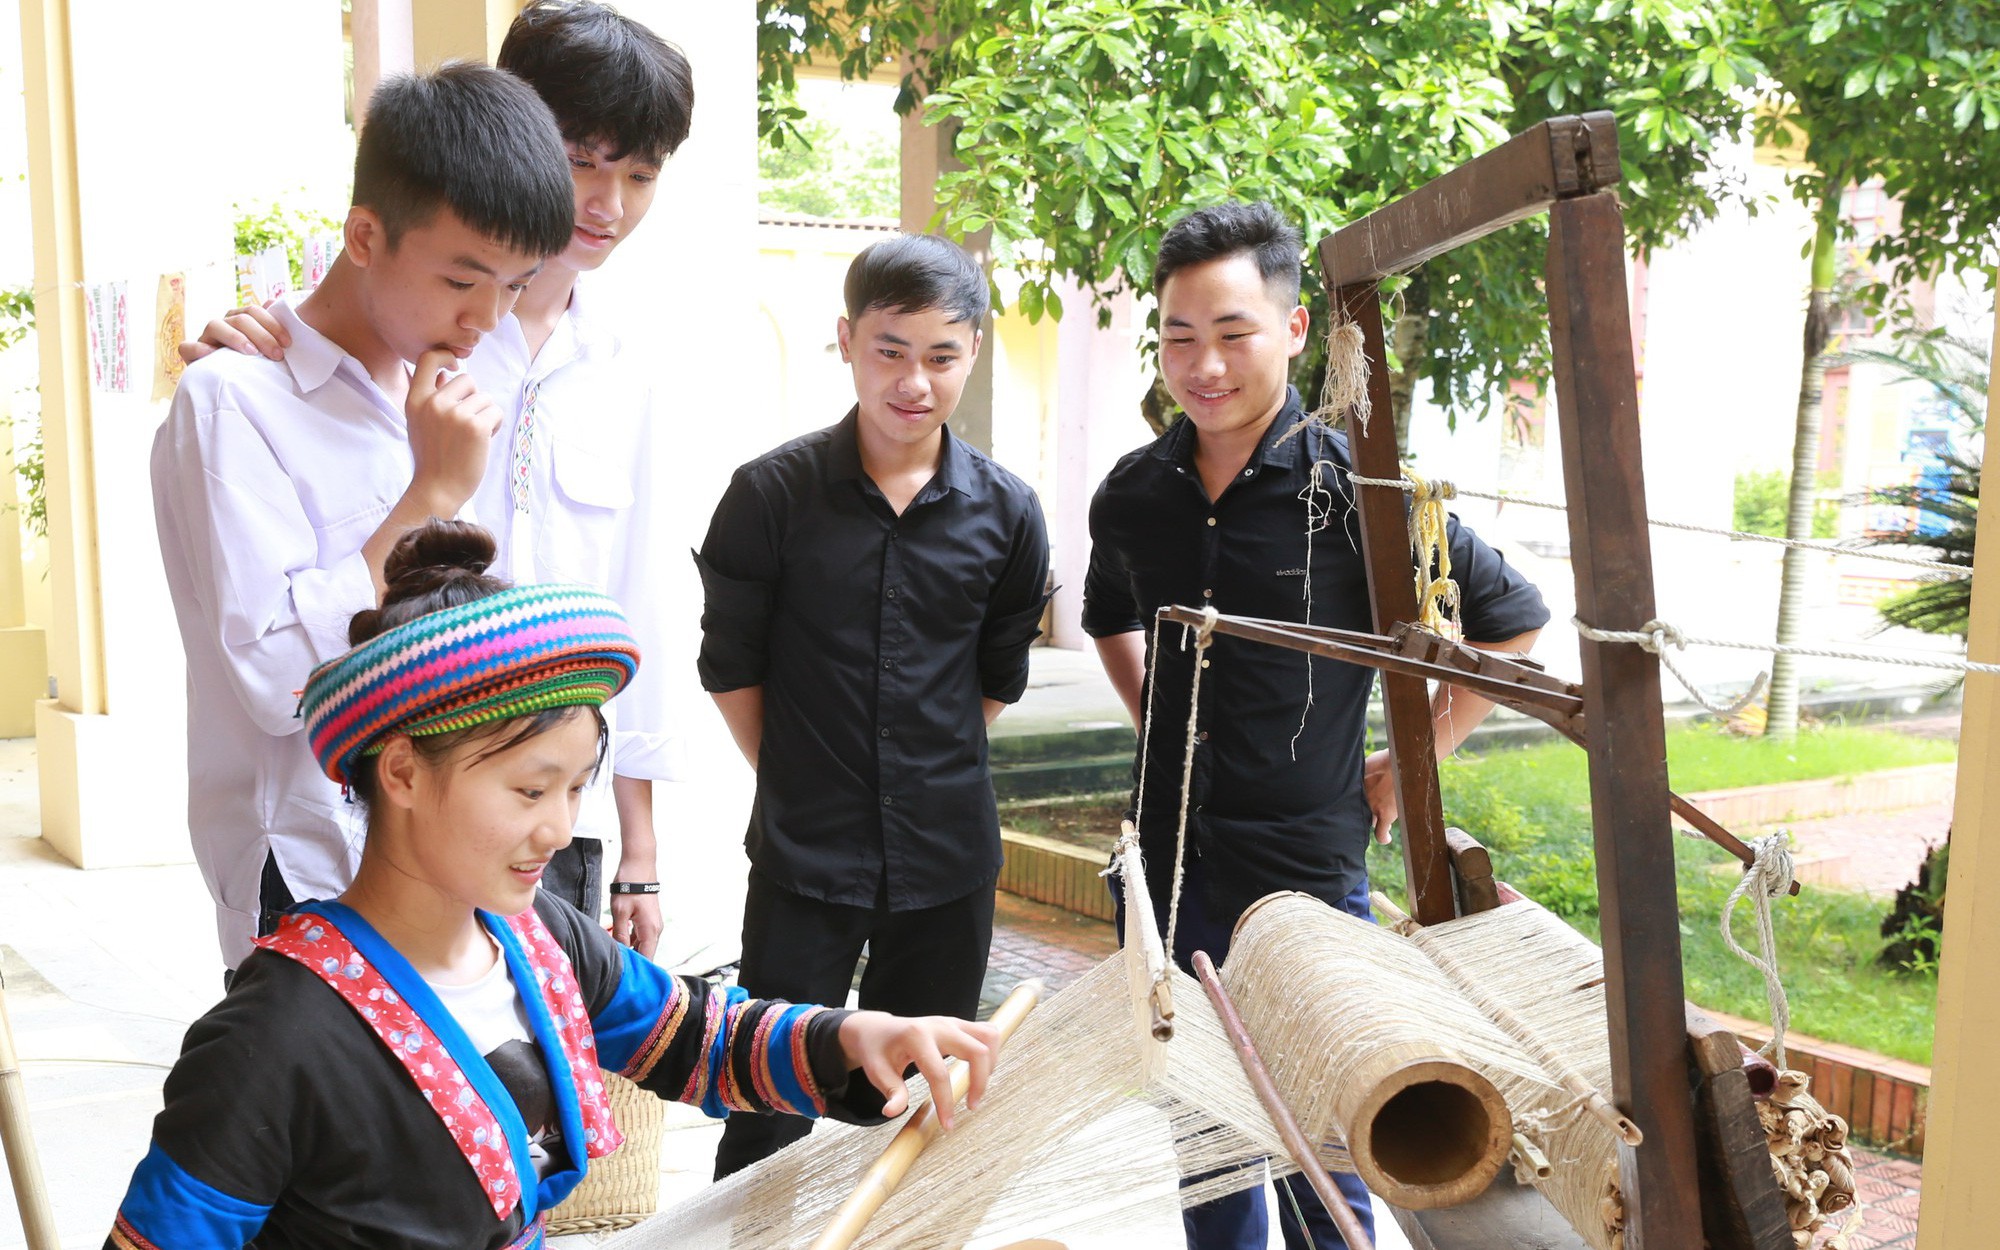 Bảo tàng Văn hóa các dân tộc Việt Nam tổ chức nhiều hoạt động trải nghiệm dịp 2/9